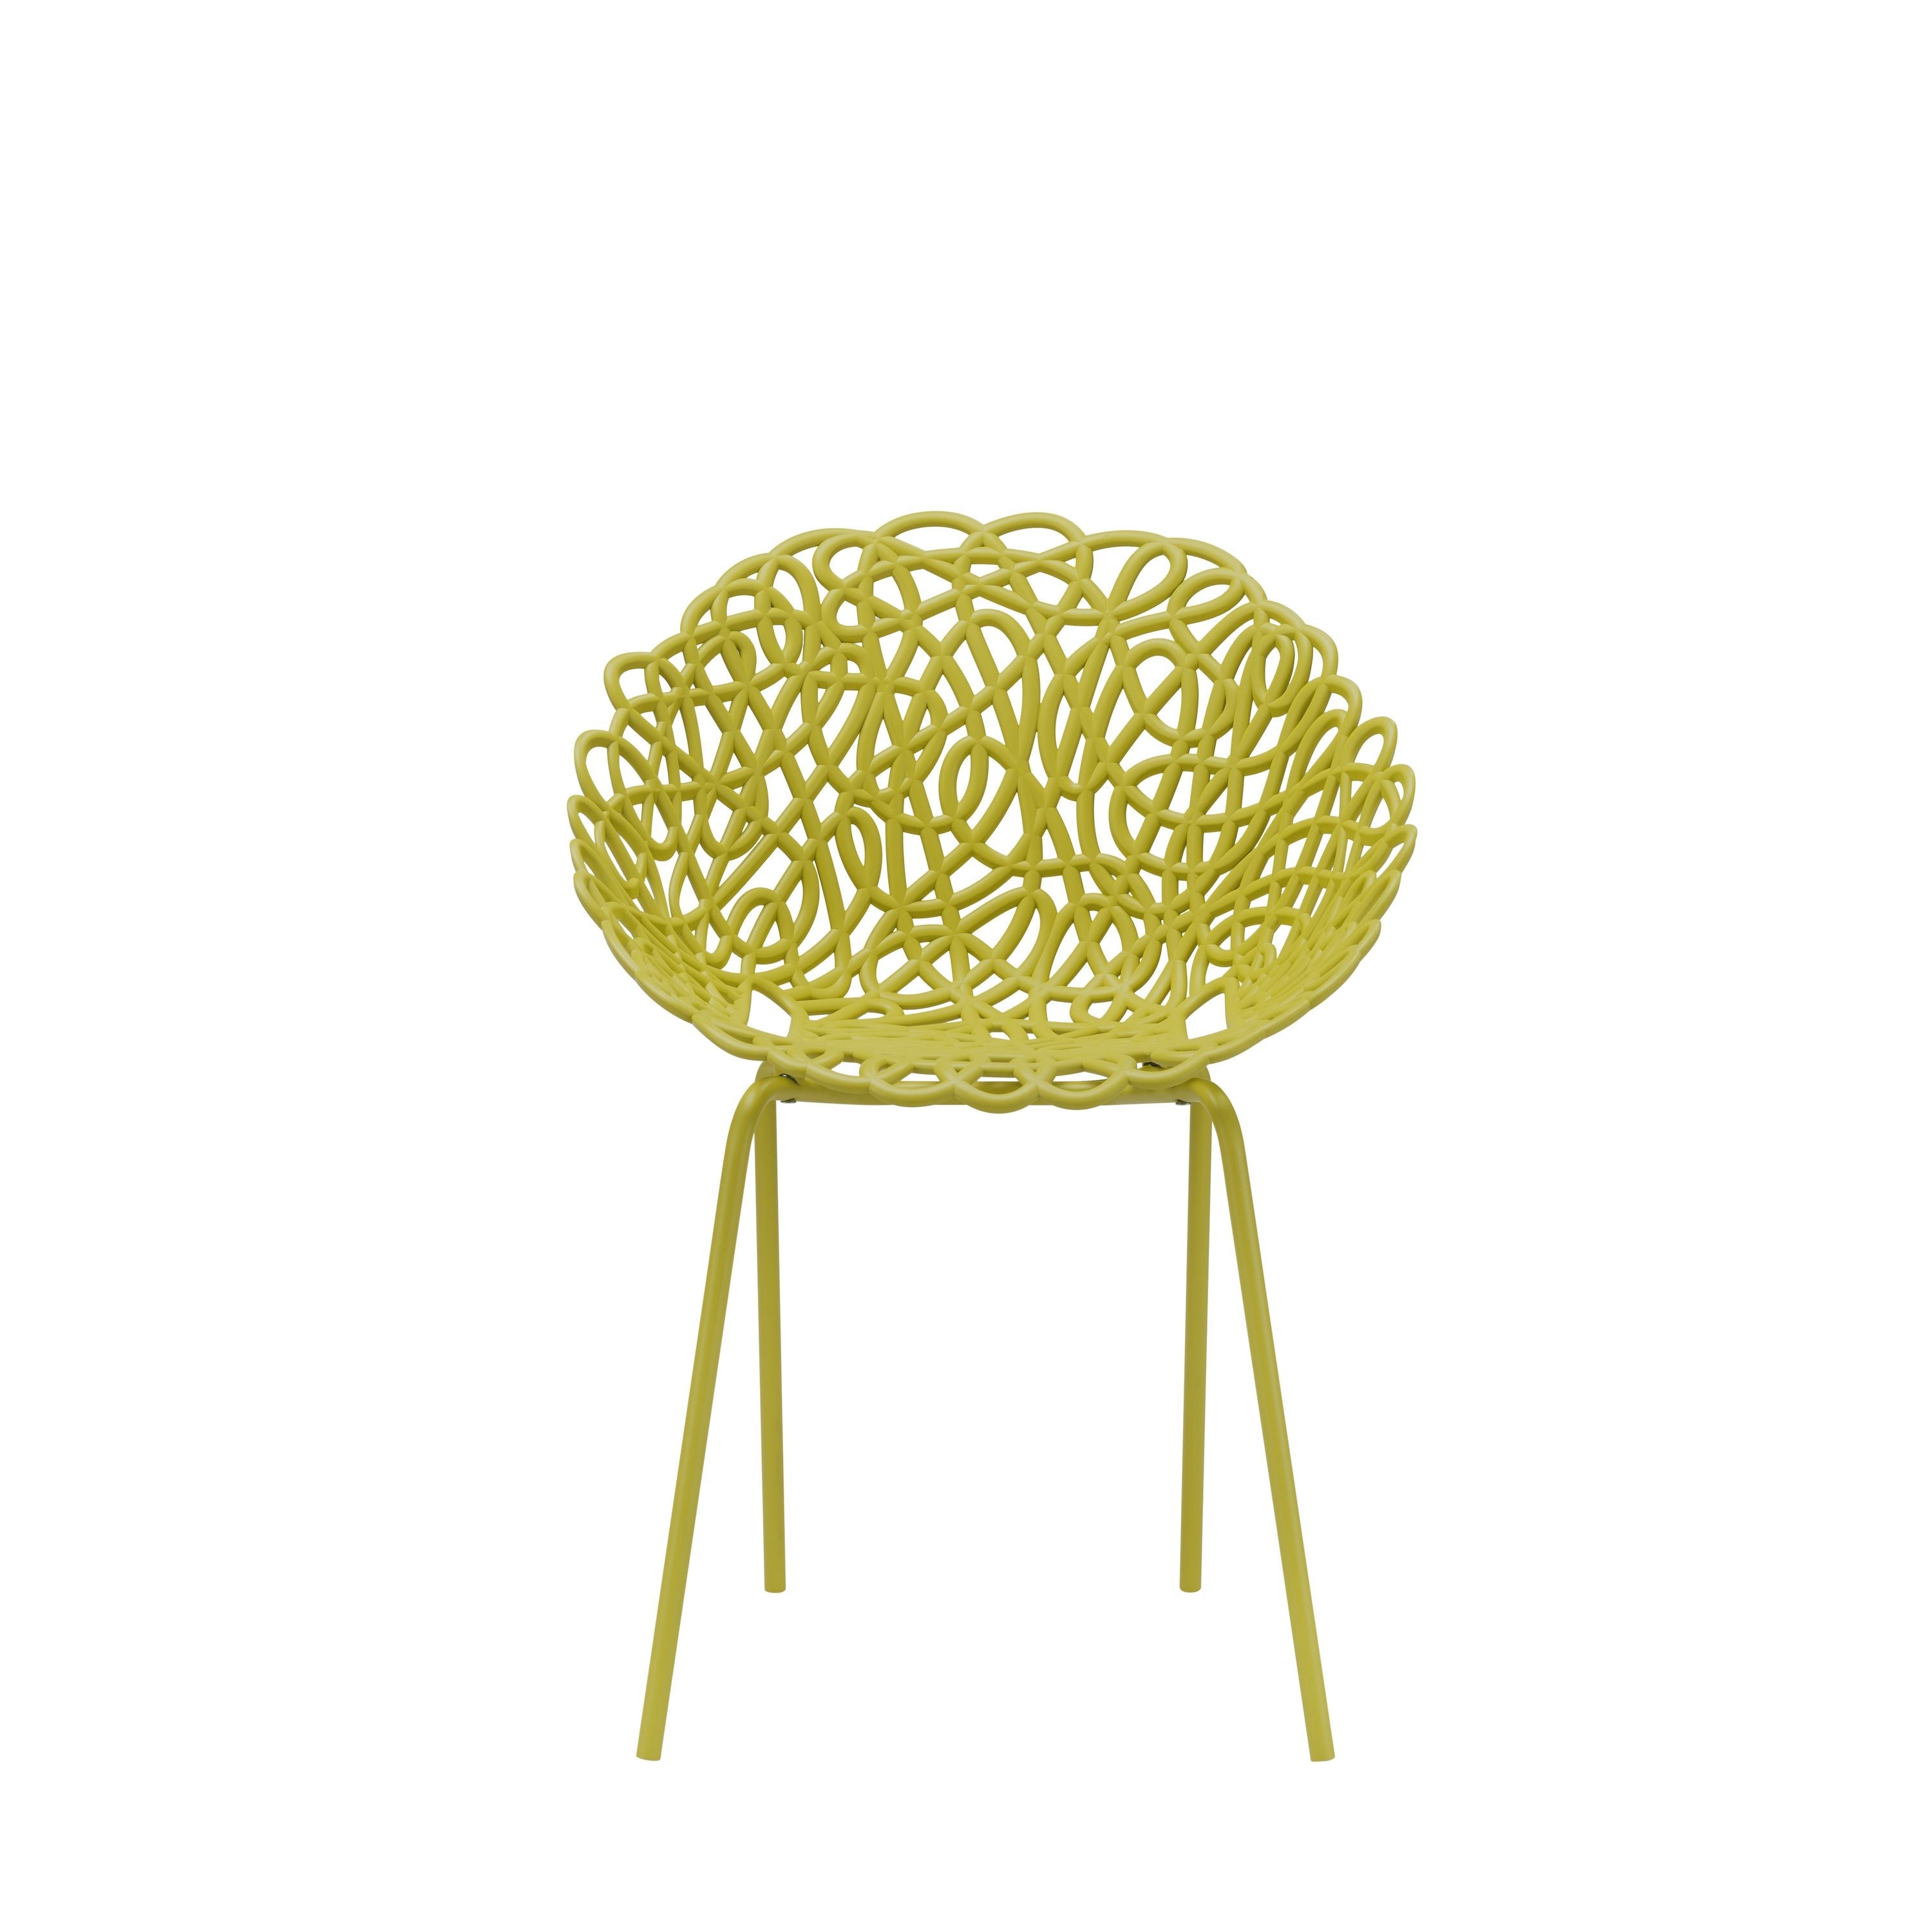 Qeeboo Bacana Chair Indoor Set Of 2 Pcs, Mustard